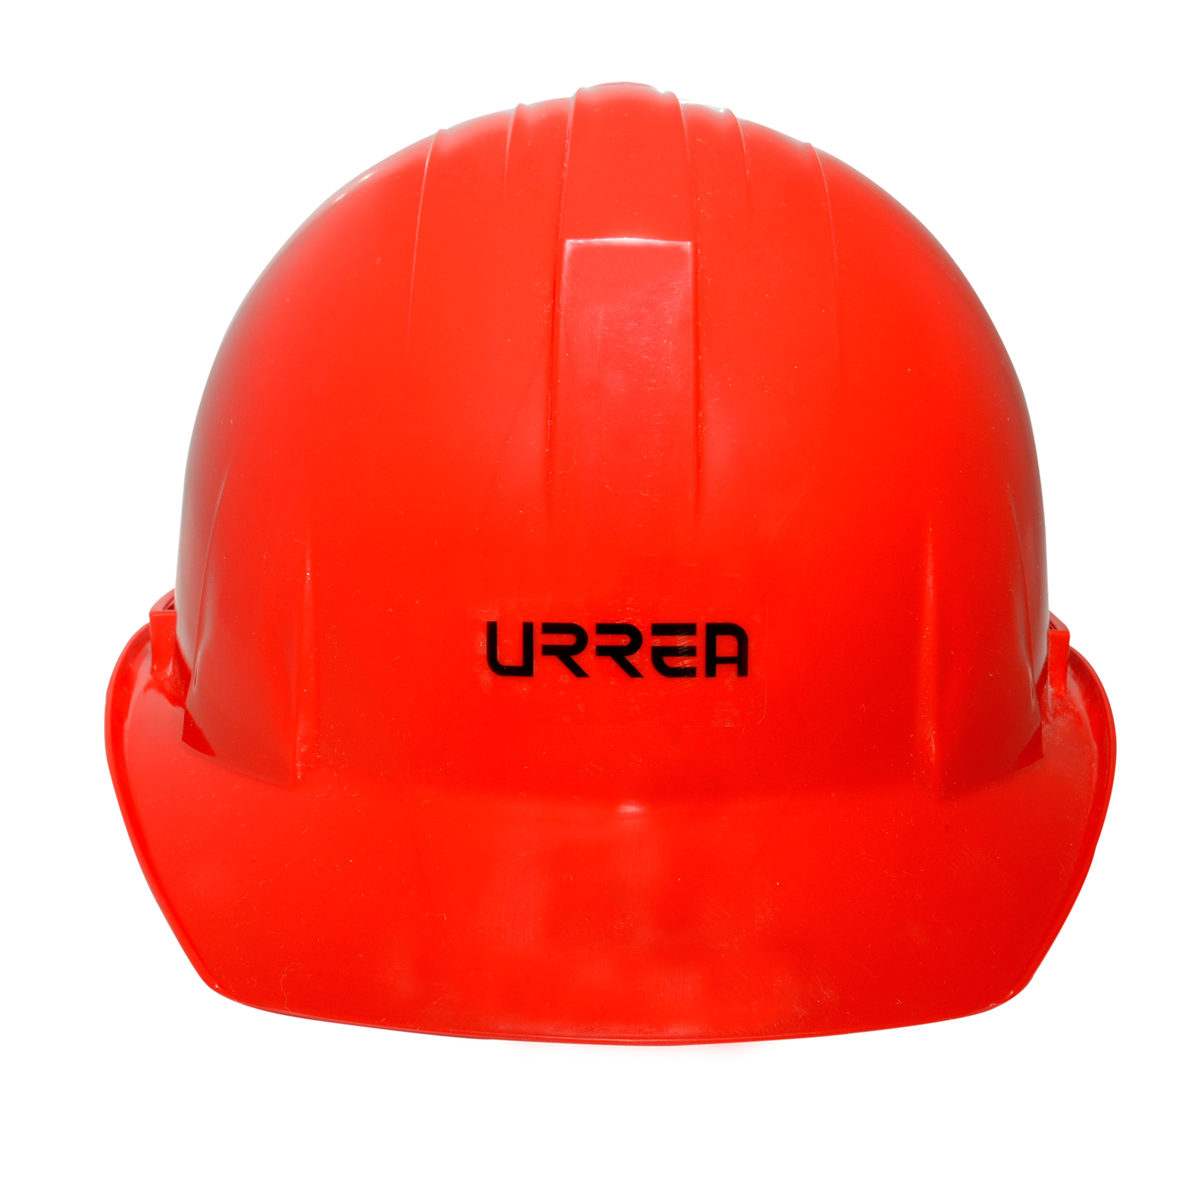 Imagen para Casco de seguridad con ajustede 4 puntos, color rojo de Grupo Urrea